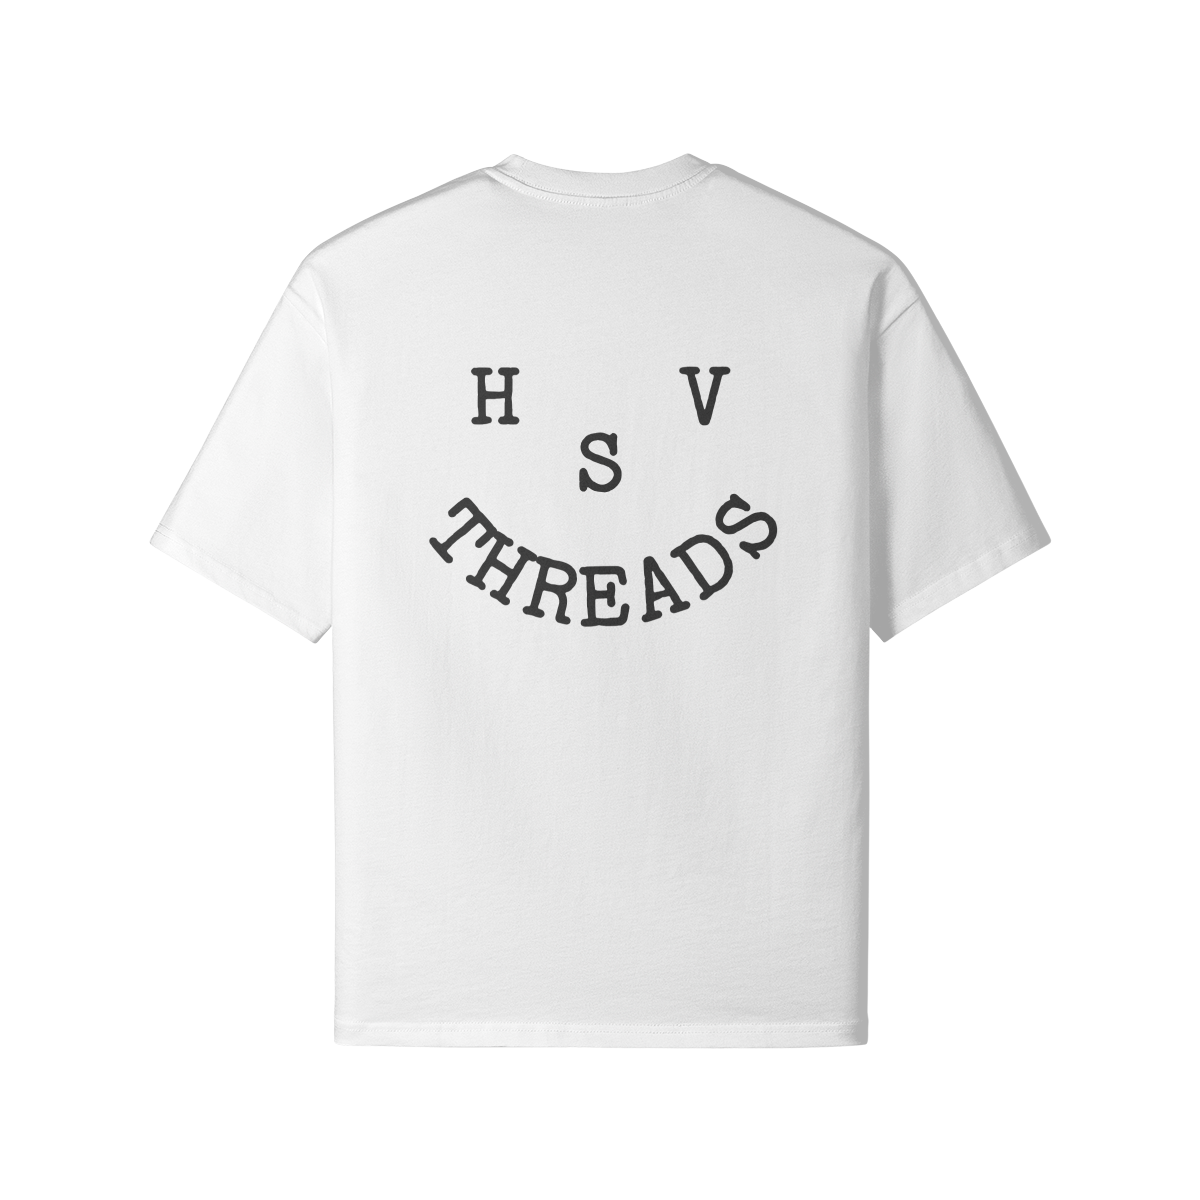 HSV Threads :)